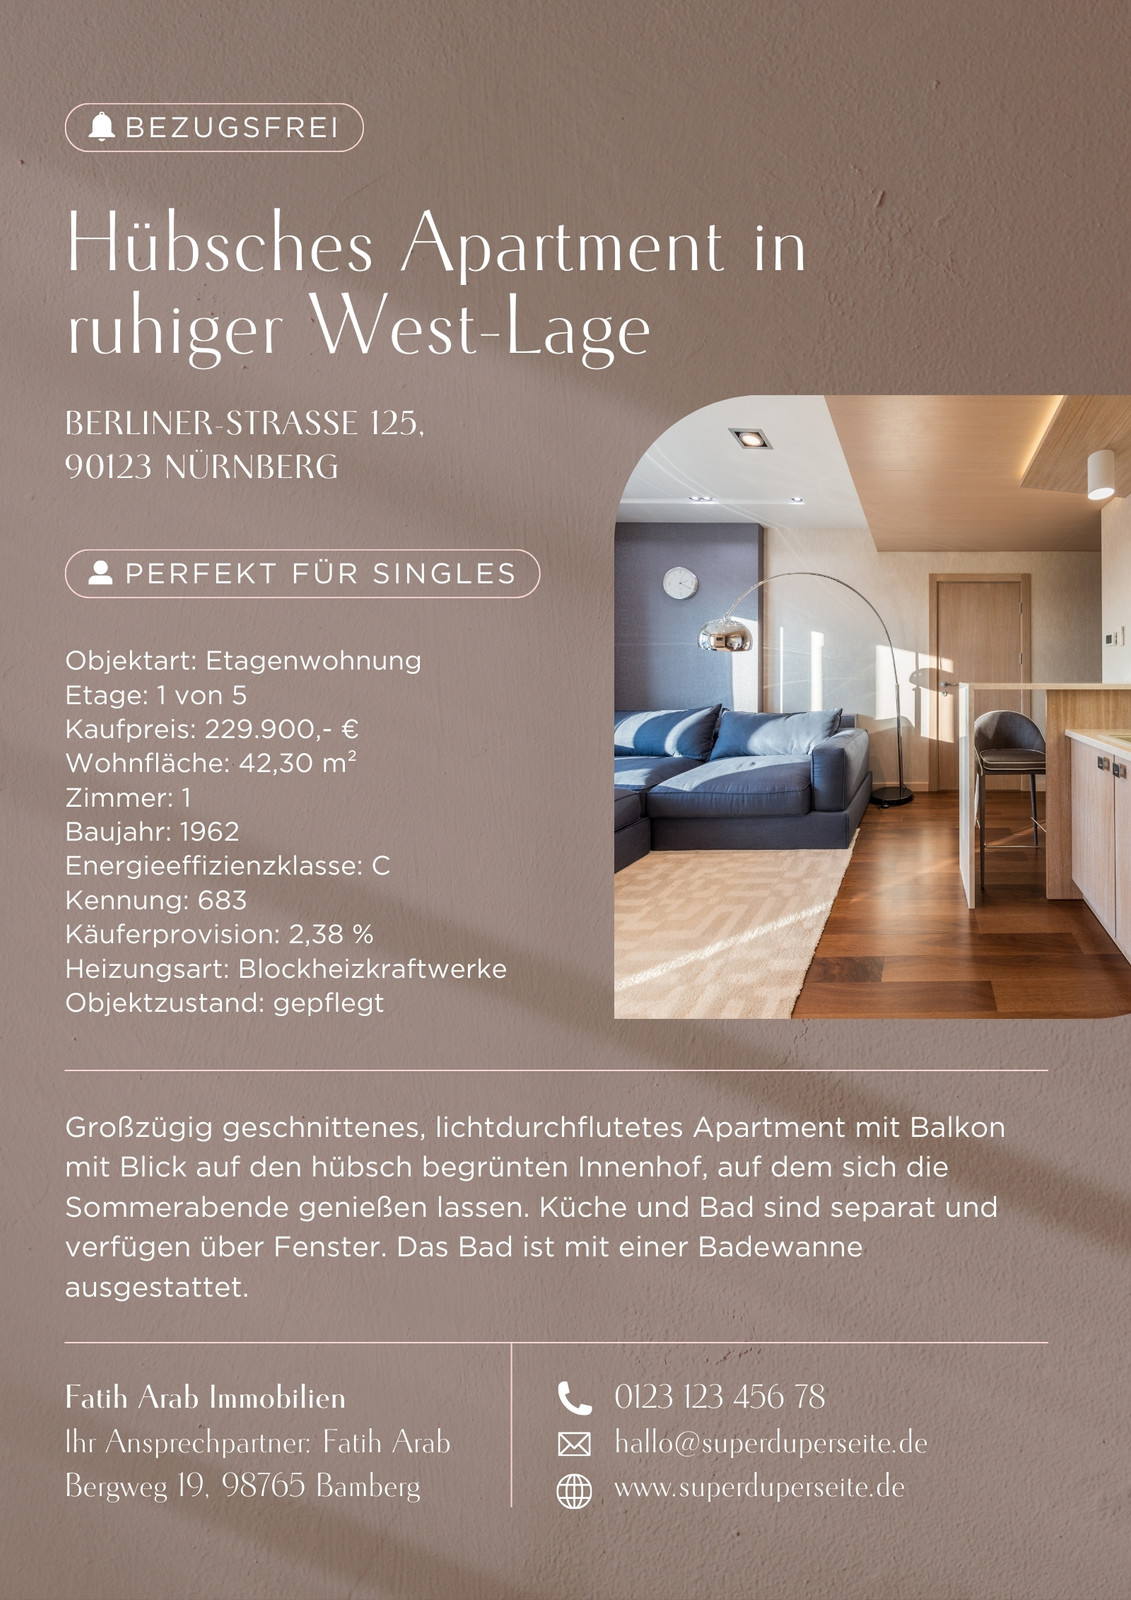 Immobilienexposé-Flyer in minimalistischem Stil in Taupe Weiß Braun